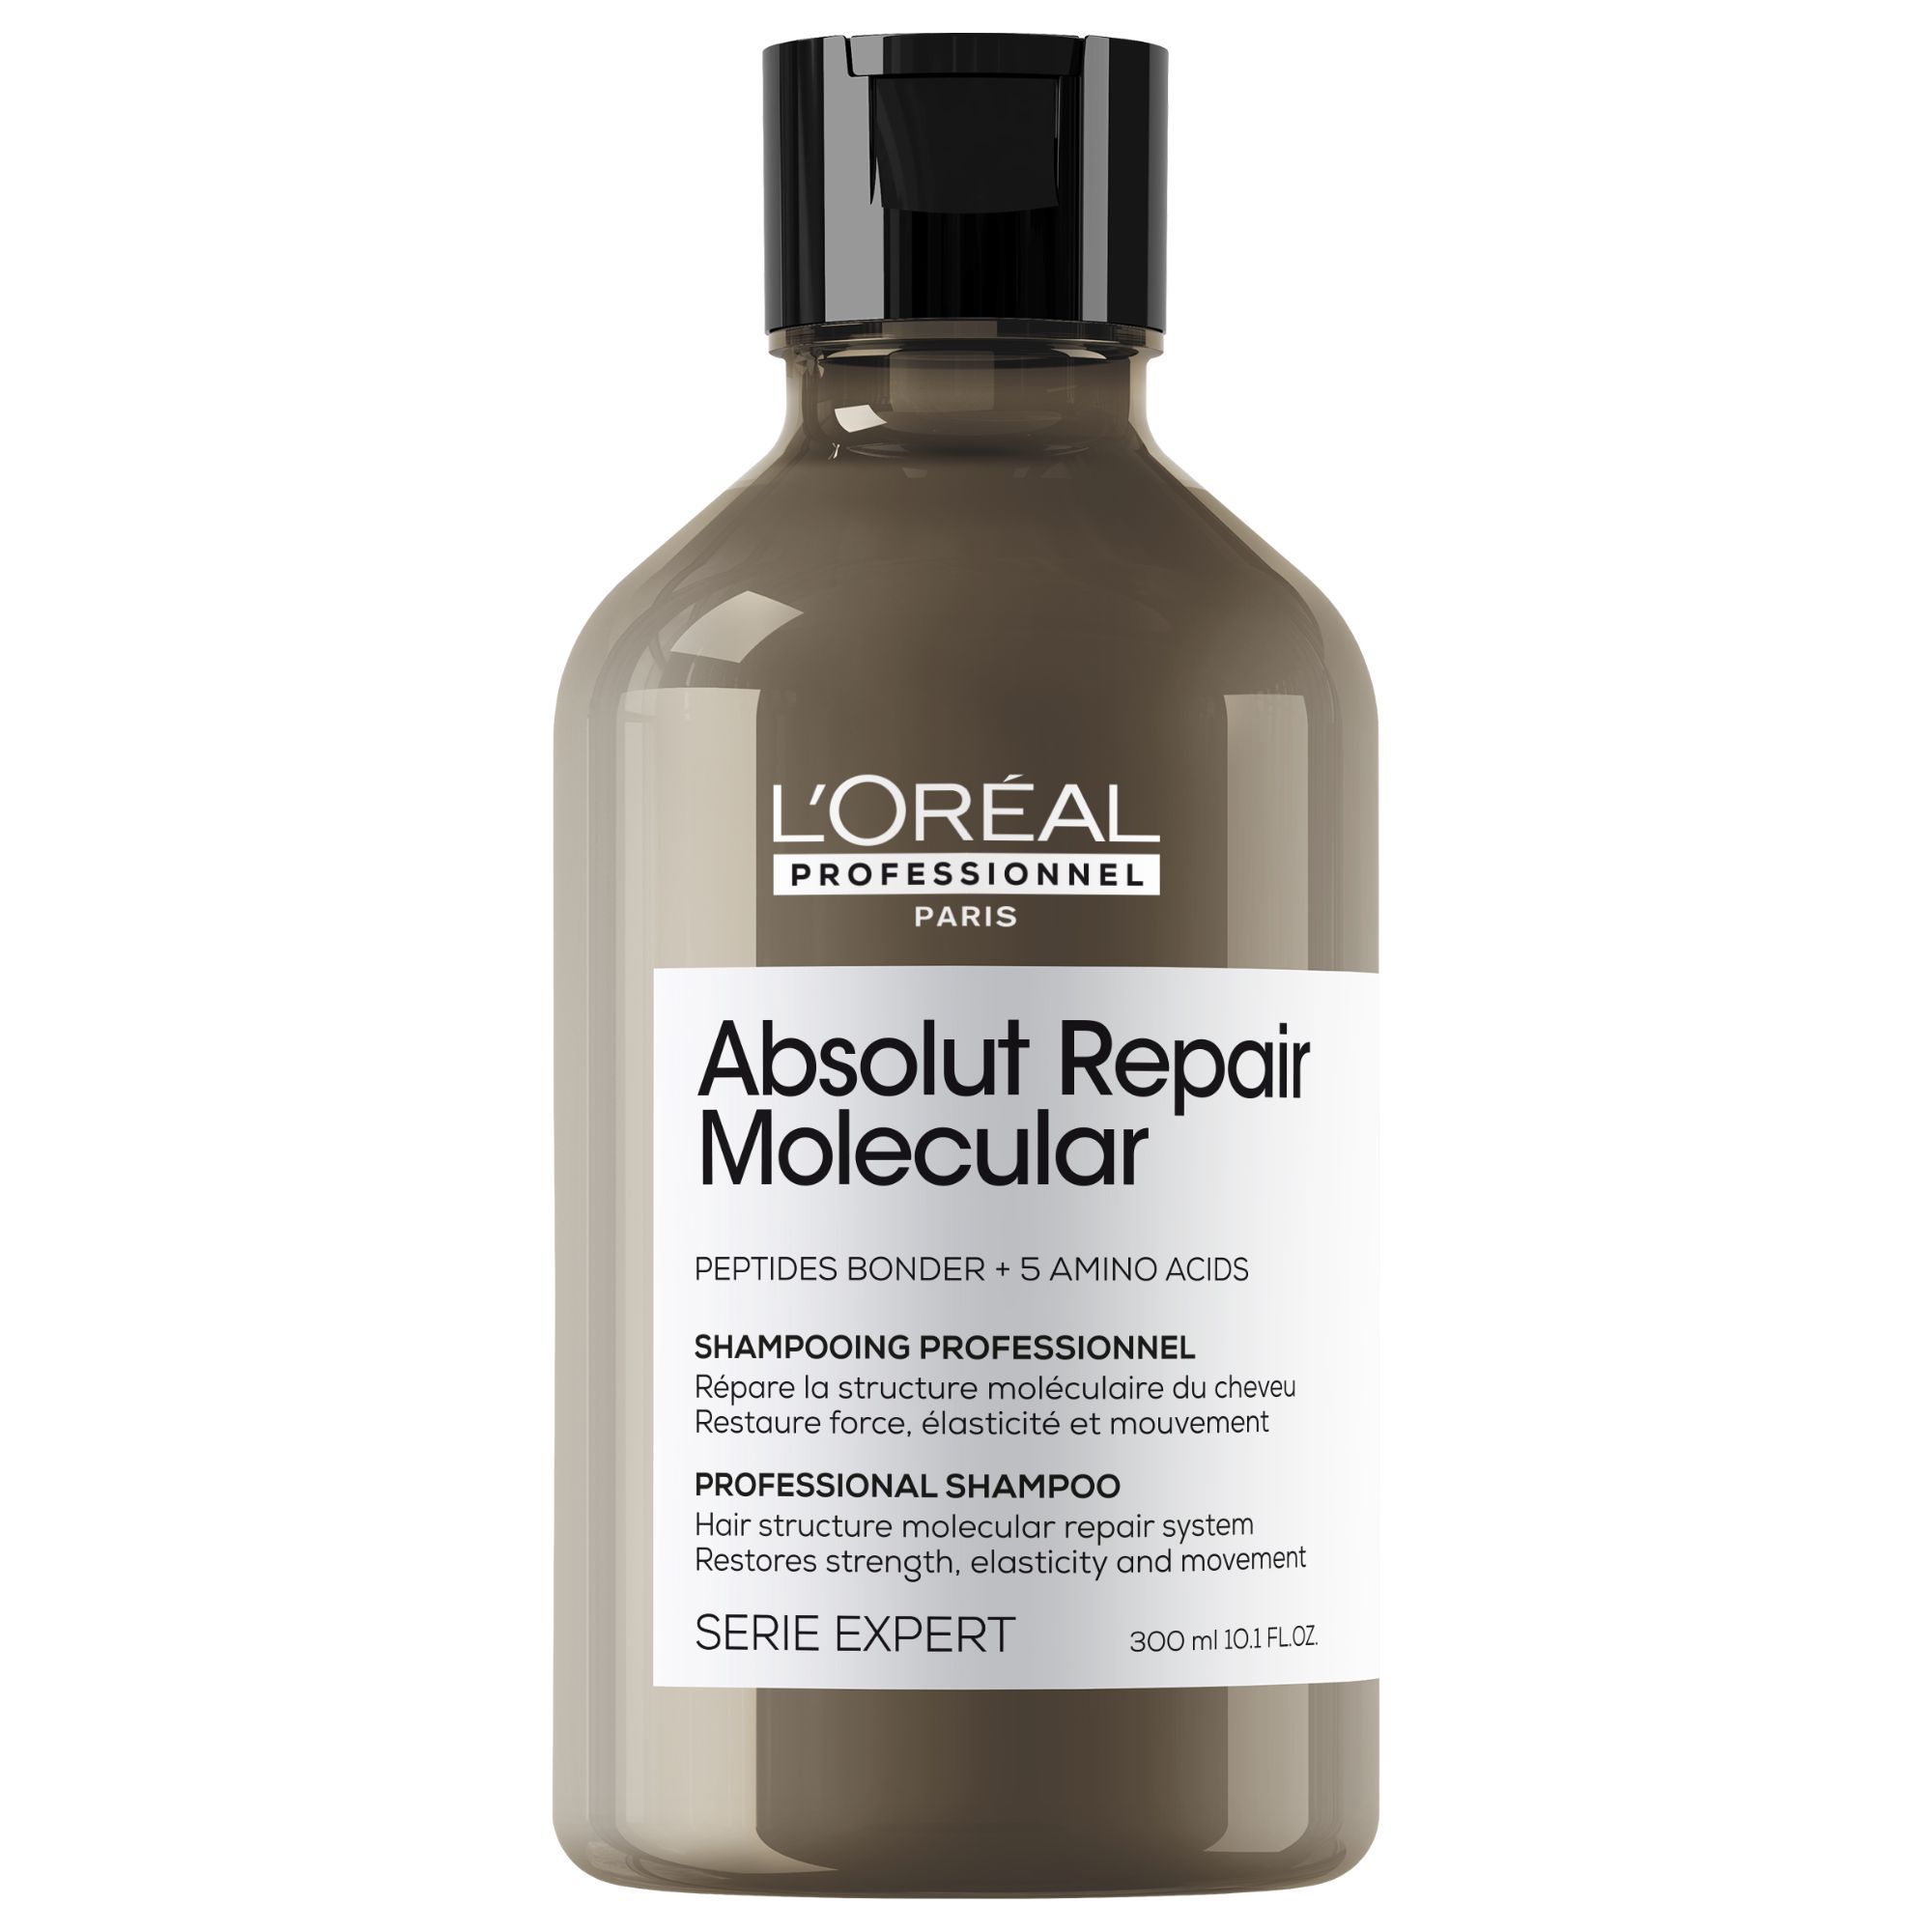 Absolut Repair Molecular Shampoo €30,60 (300ml)